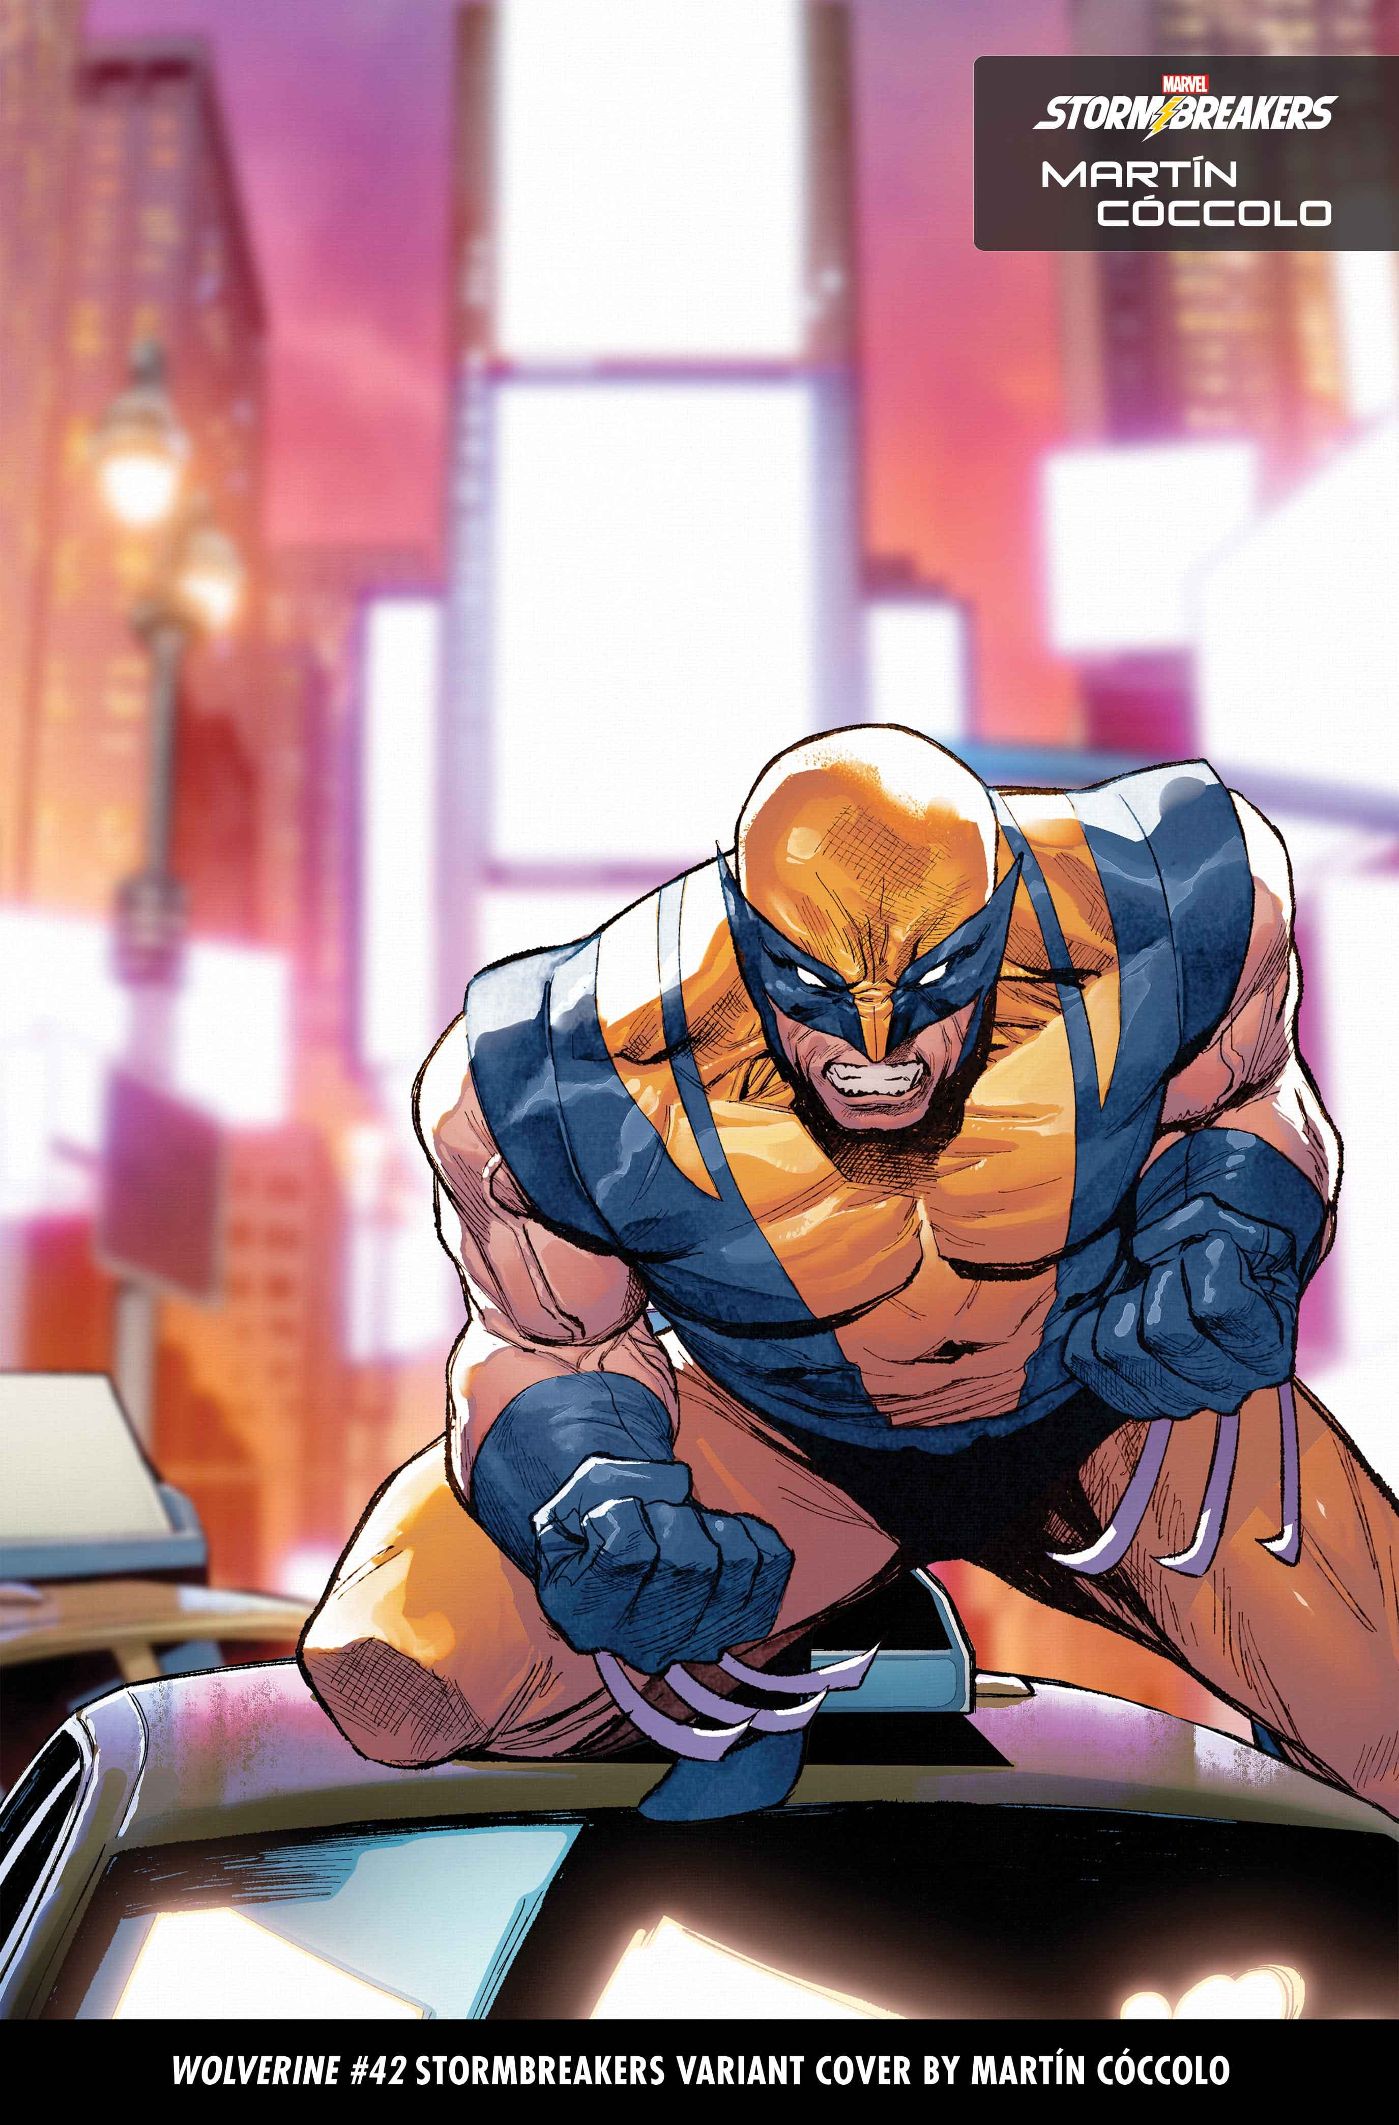 Martin Coccolo, Stormbreakers, portada variante de Wolverine #42